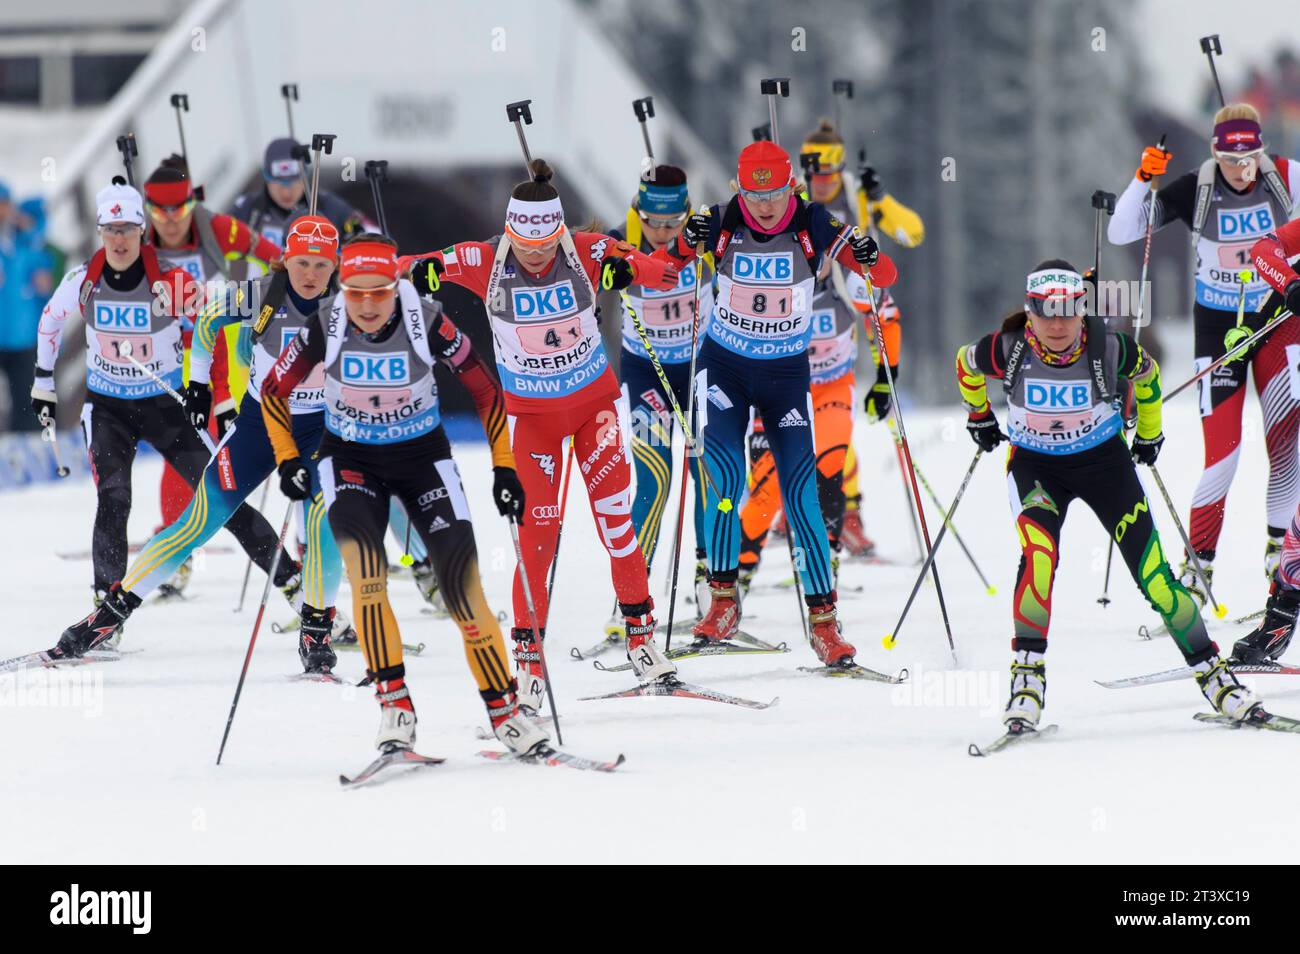 Luise Kummer (1.1) Aktion Biathlon Welt Cup 4 x 6 KM Staffel der Frauen in Oberhof, Deutschland am 07.01.2015 Stock Photo